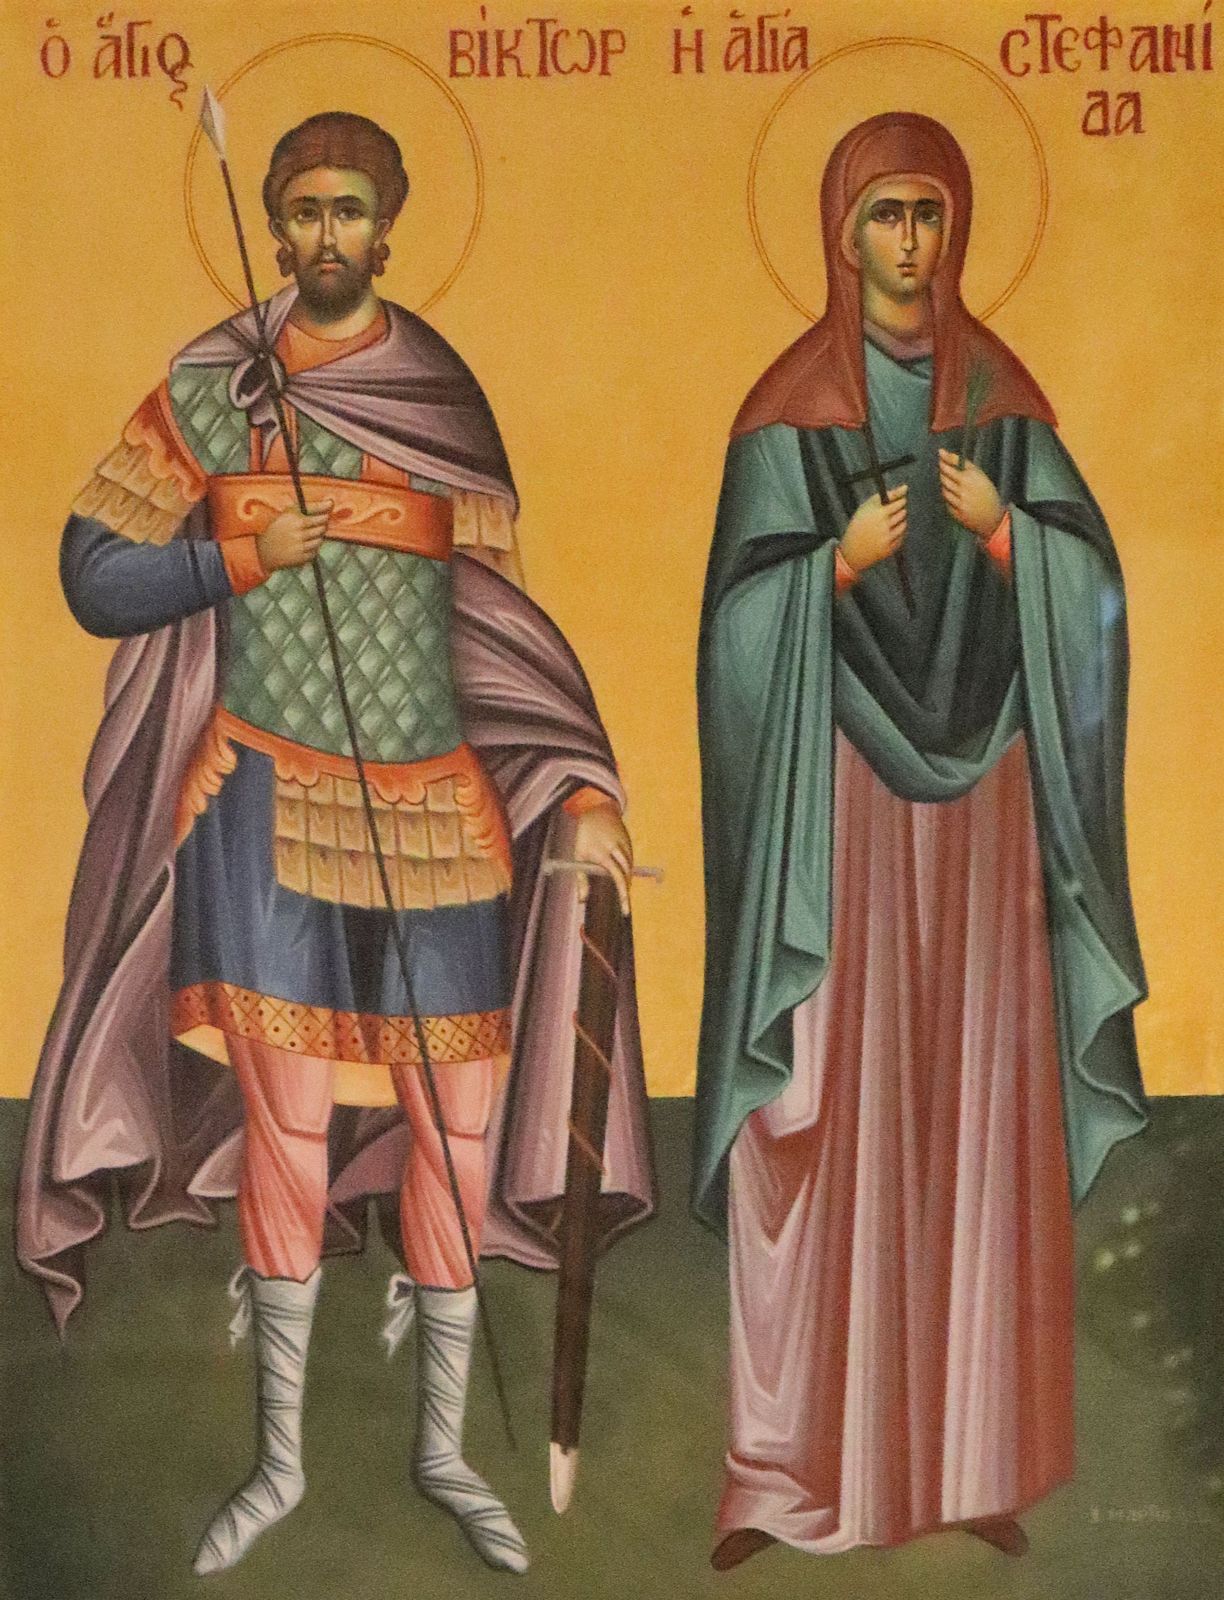 griechische Ikone, 2011, im Sanktuarium Vittore e Corona